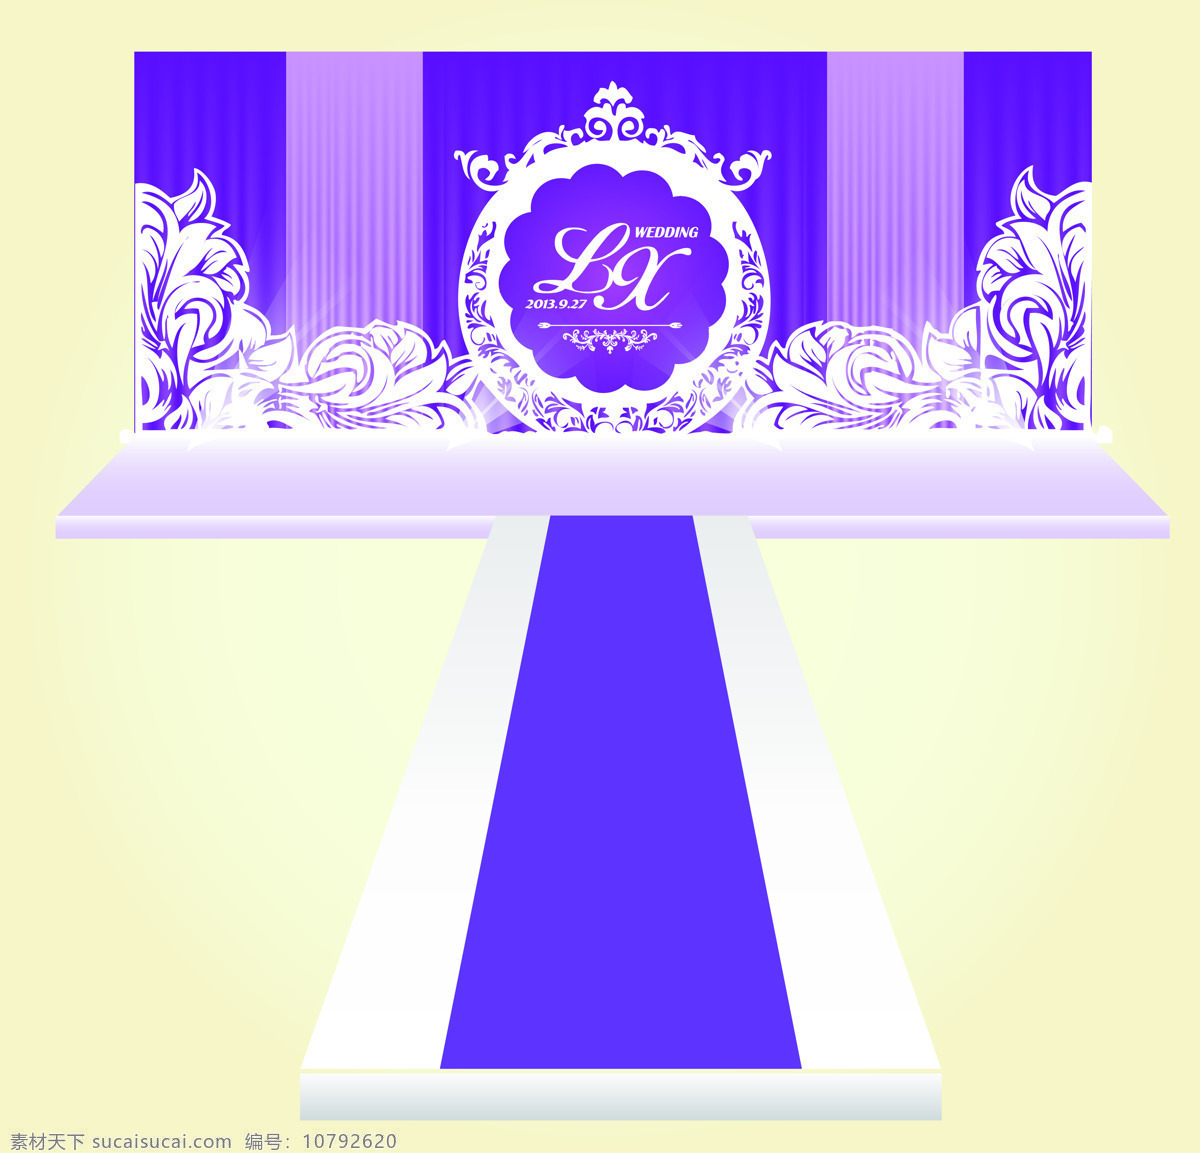 婚礼舞台设计 kt板 婚礼 婚庆 结婚 效果图 logo 镂空 花纹 舞美设计 环境设计